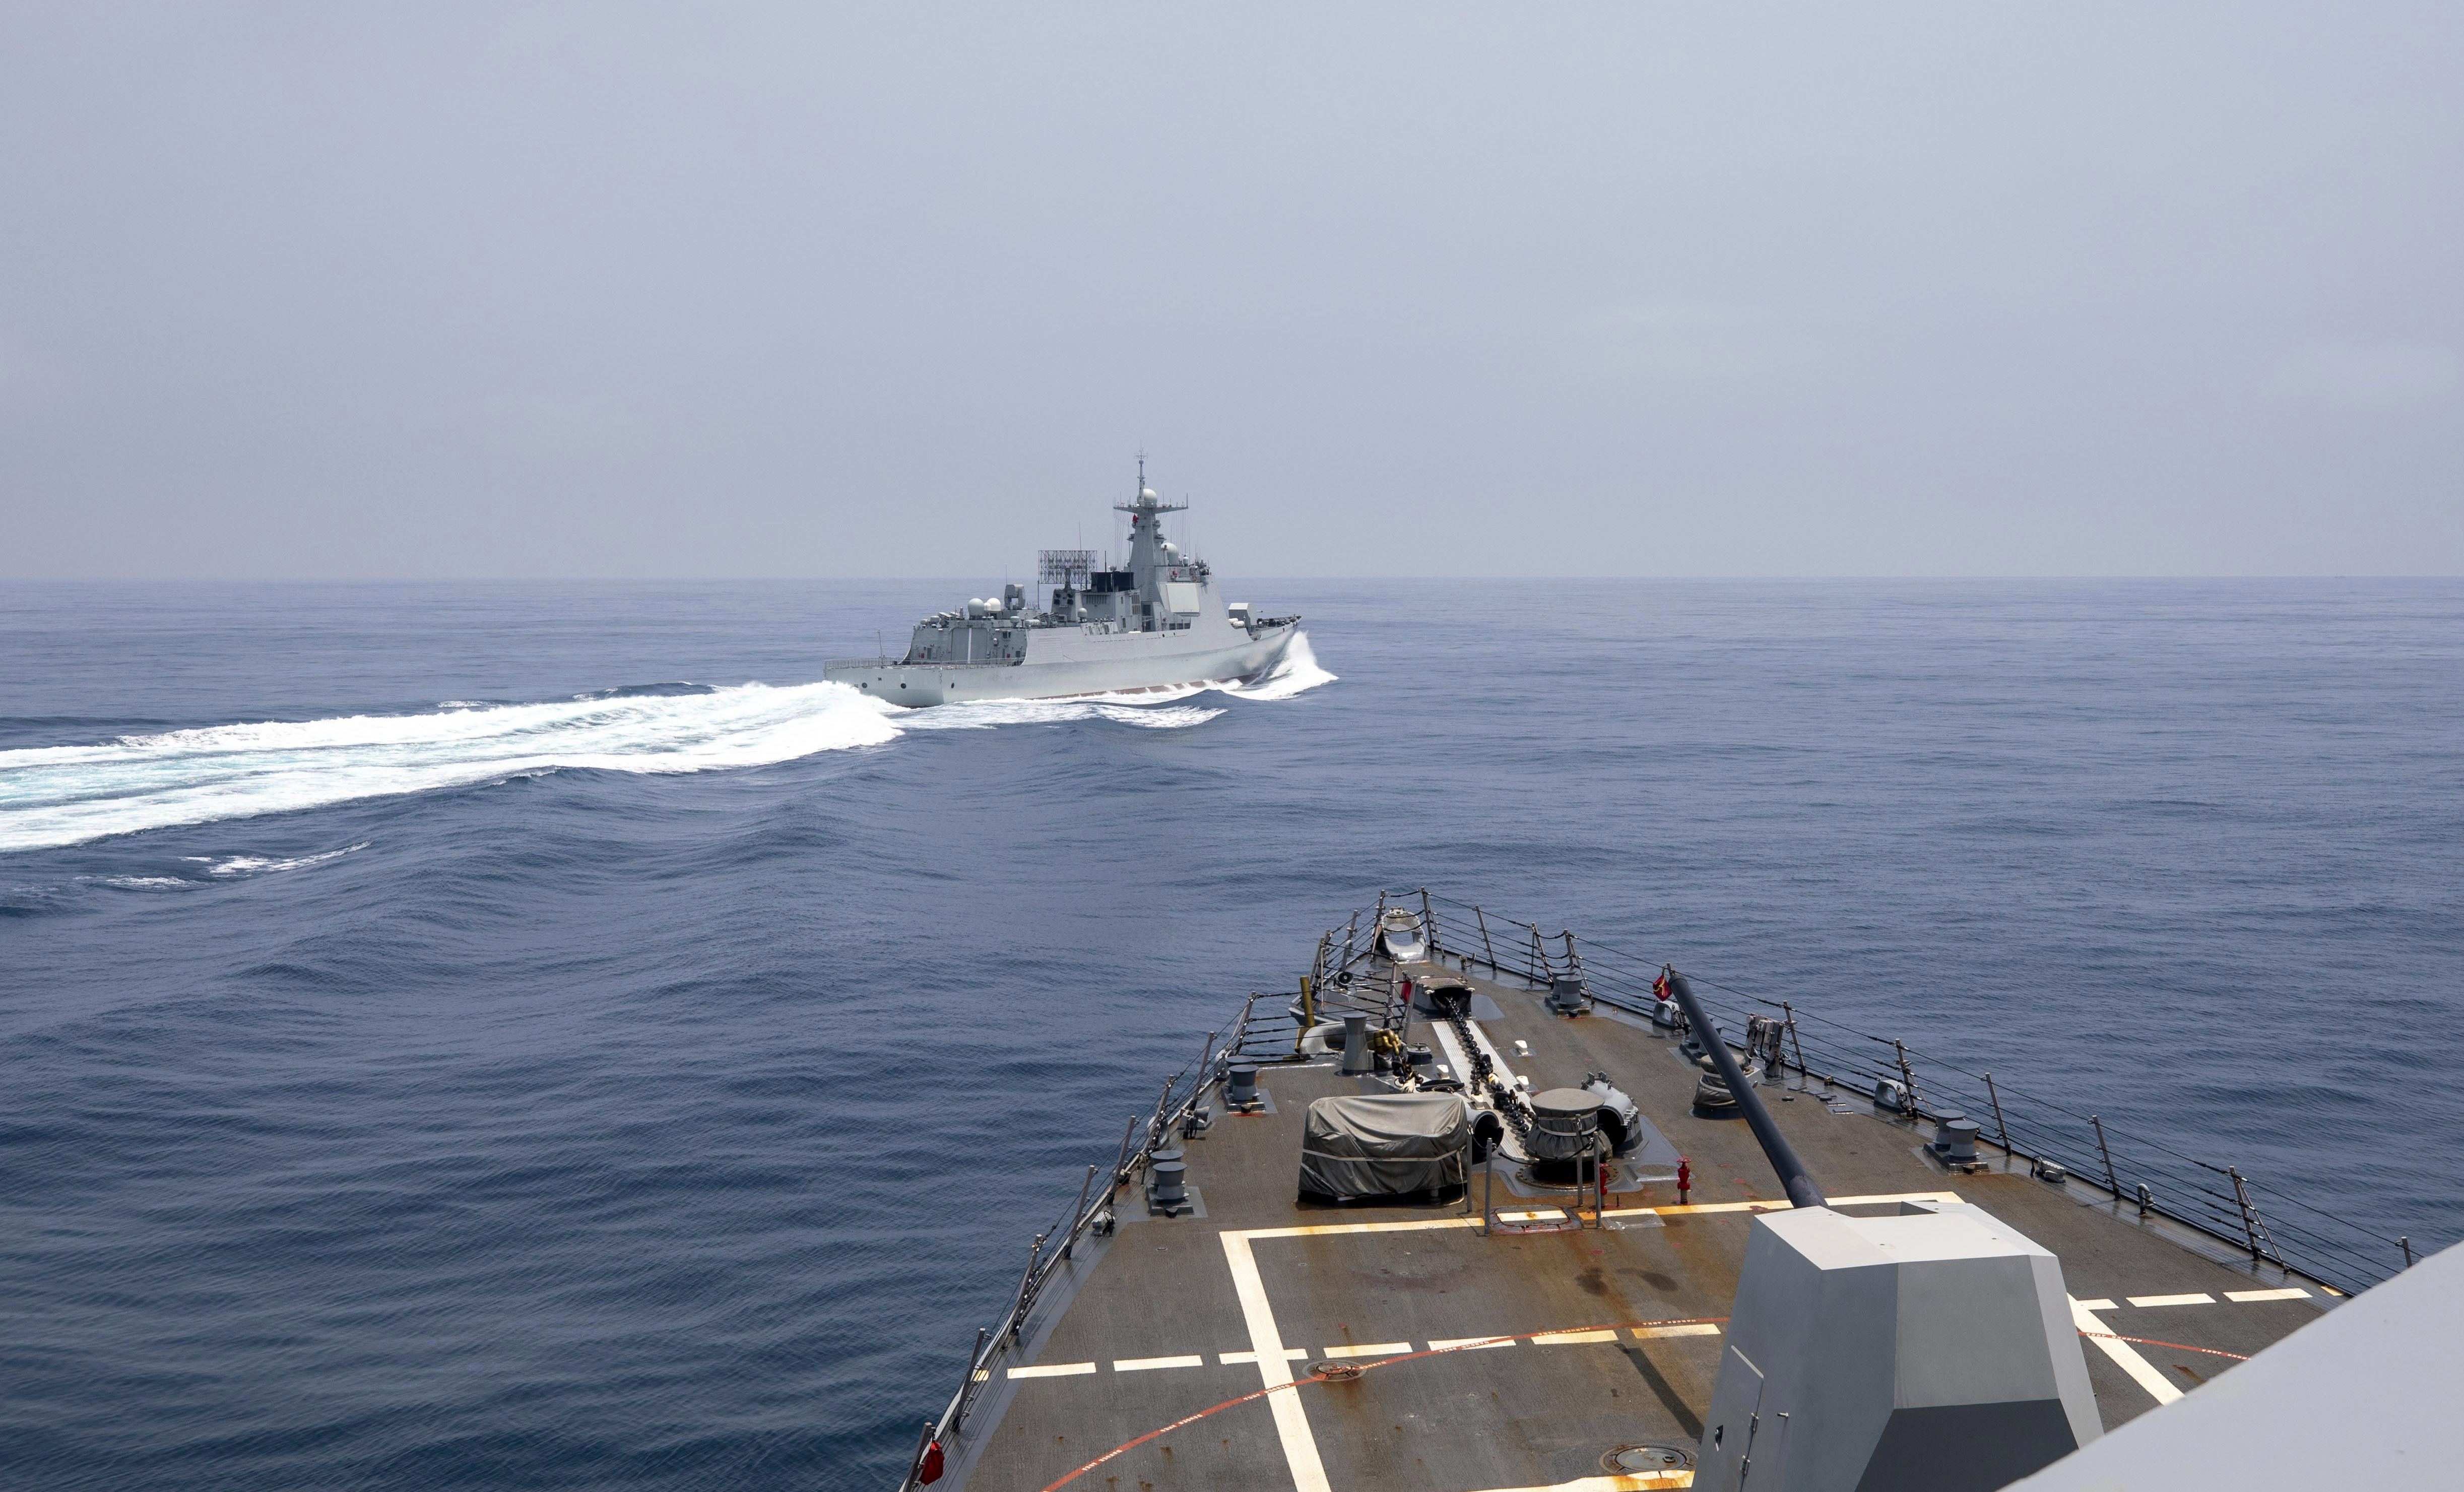 Las incursiones se produjeron semanas después de que Estados Unidos, Filipinas y Japón completaran sus primeros ejercicios conjuntos de guardacostas en el conflictivo Mar de China Meridional, que Beijing reclama casi en su totalidad. (AP)